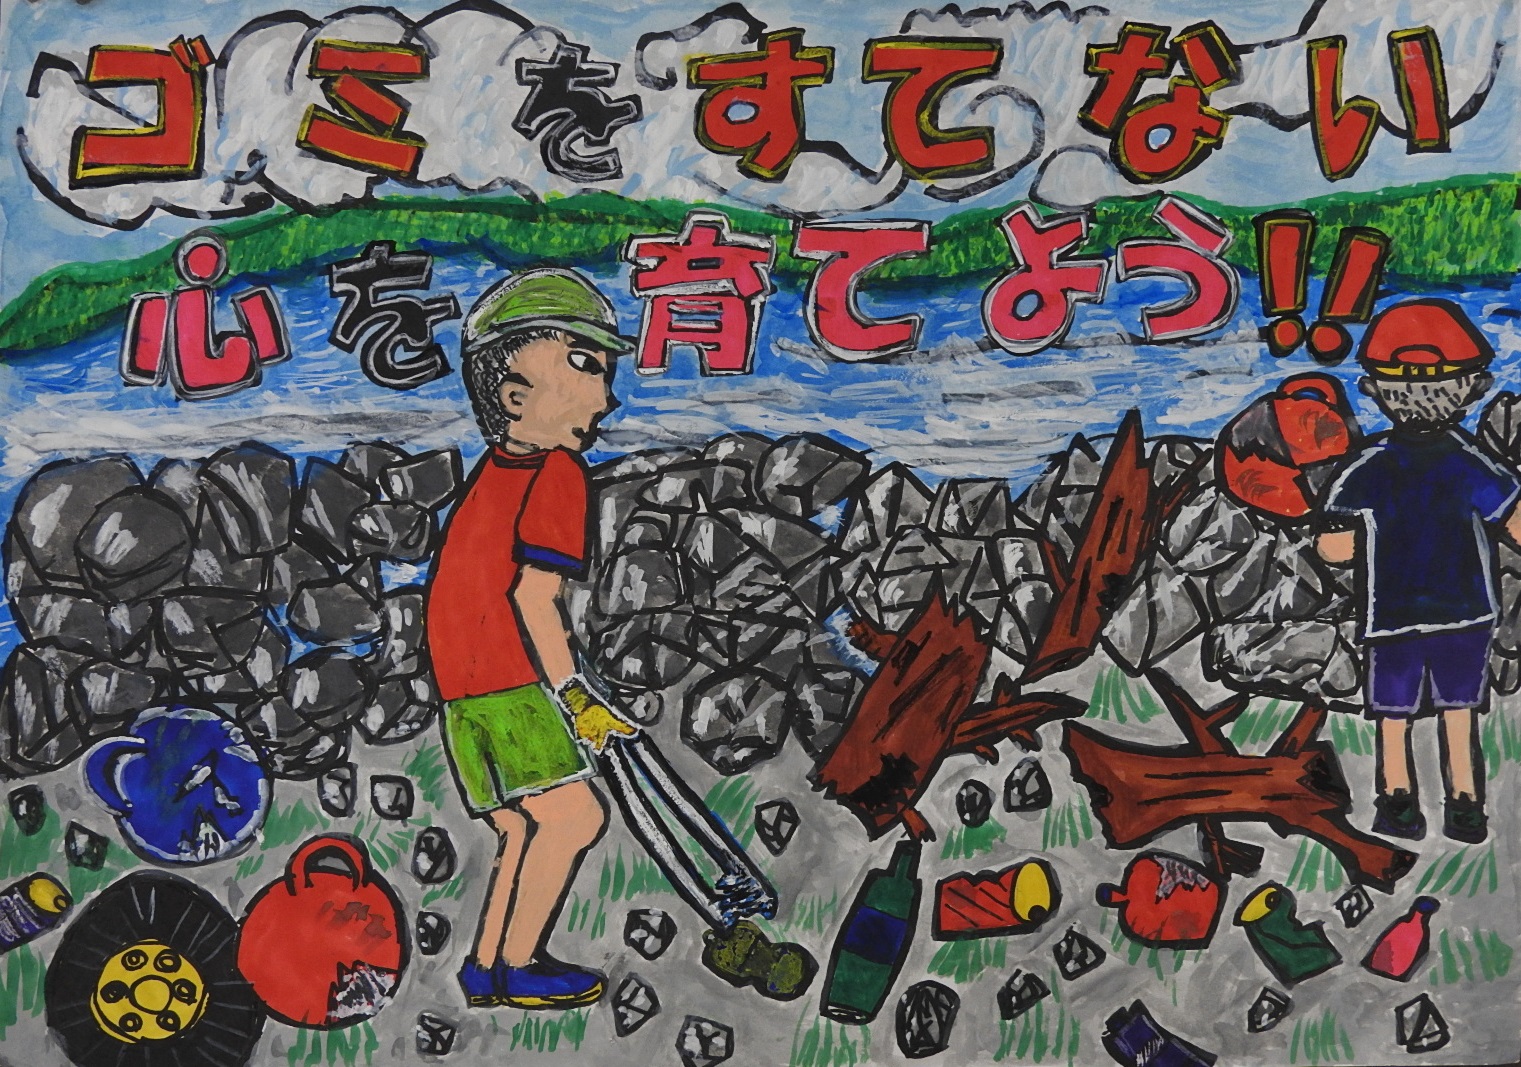 「ゴミをすてない心をを育てよう！！」と書かれた、川辺のゴミをトングで拾っている少年のポスター